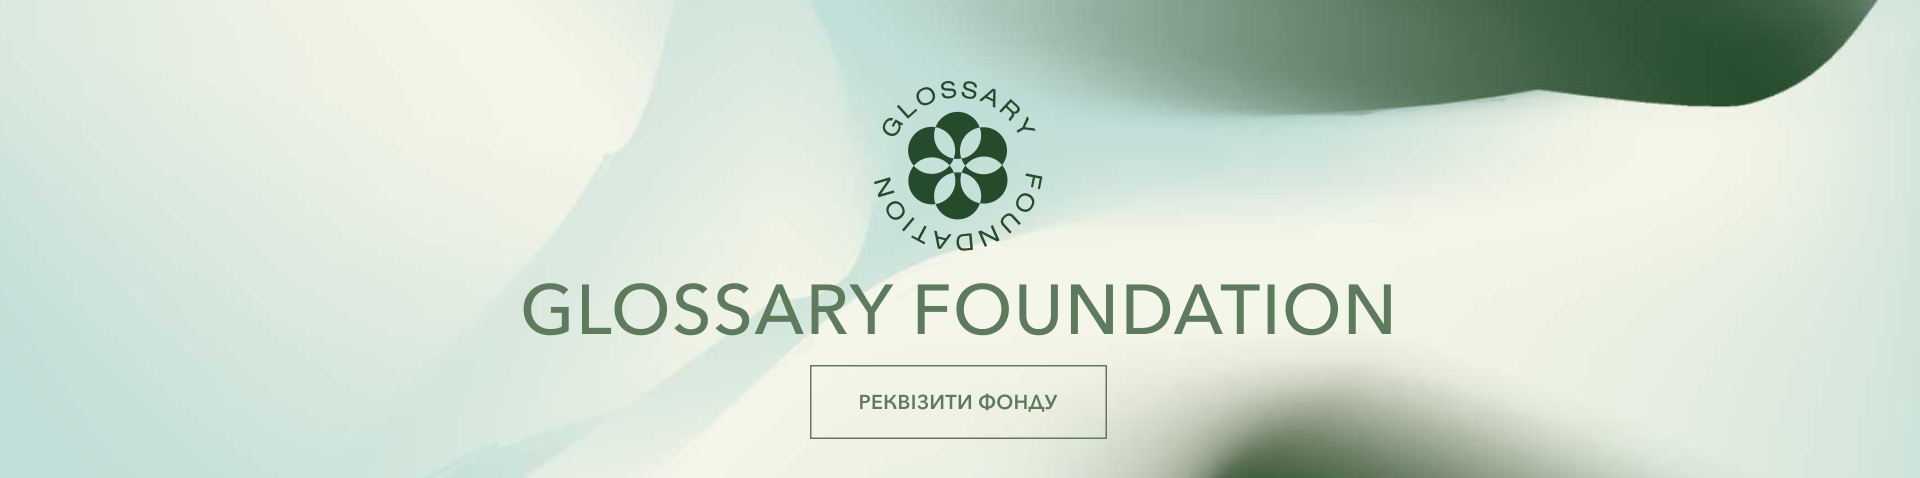 glossary-foundation